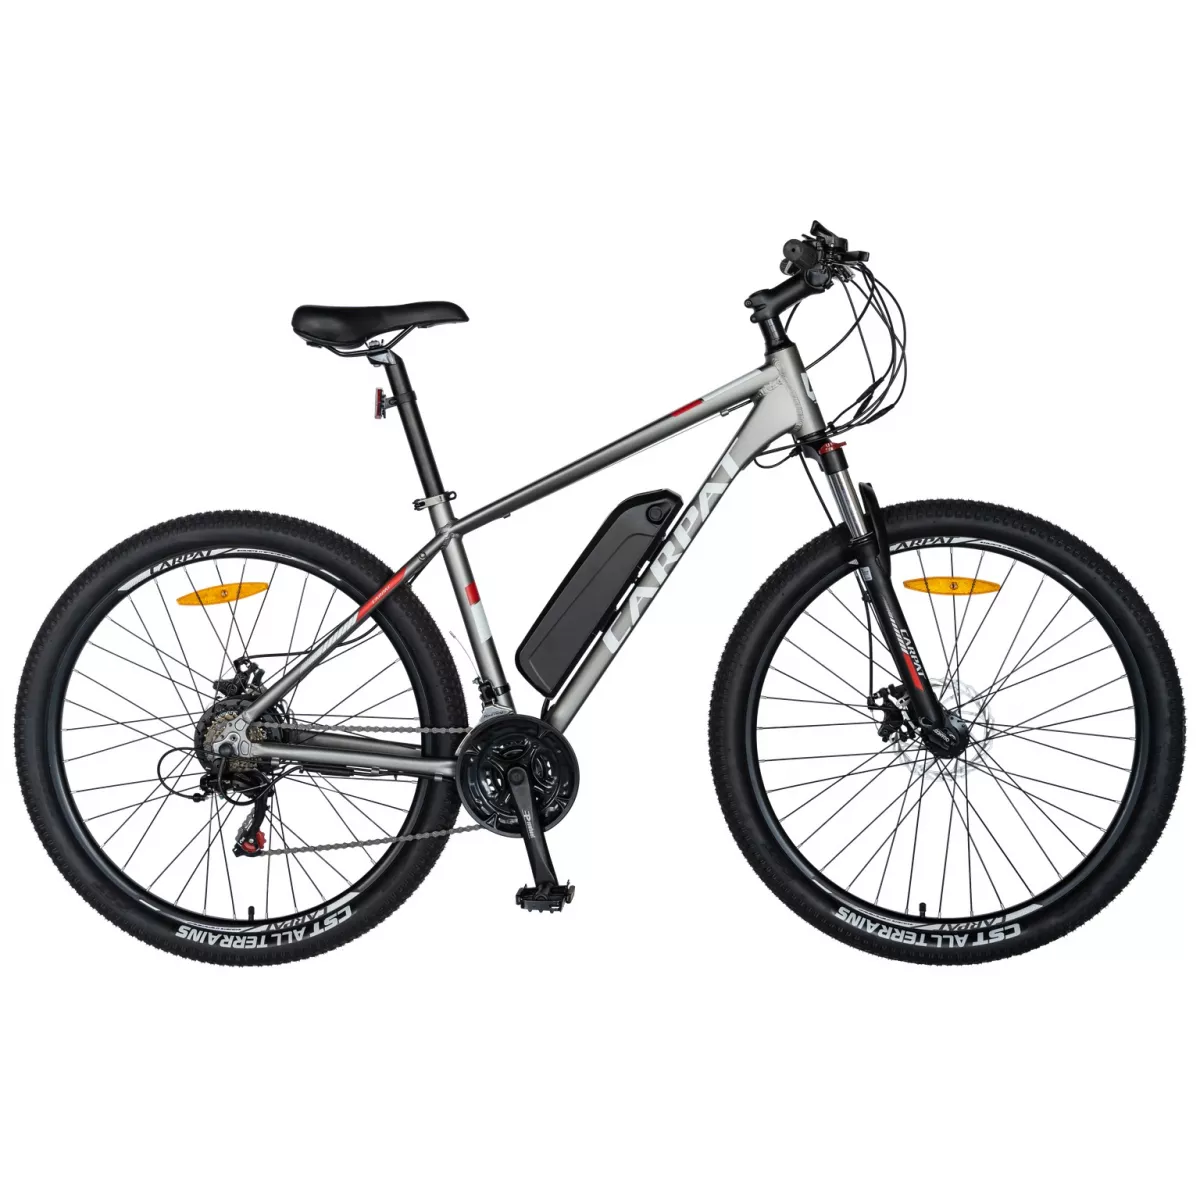 Bicicleta electrica MTB (E-BIKE) CARPAT 27.5" C1011E, cadru aluminiu, frane mecanice disc, transmisie SHIMANO 21 viteze, culoare gri/alb